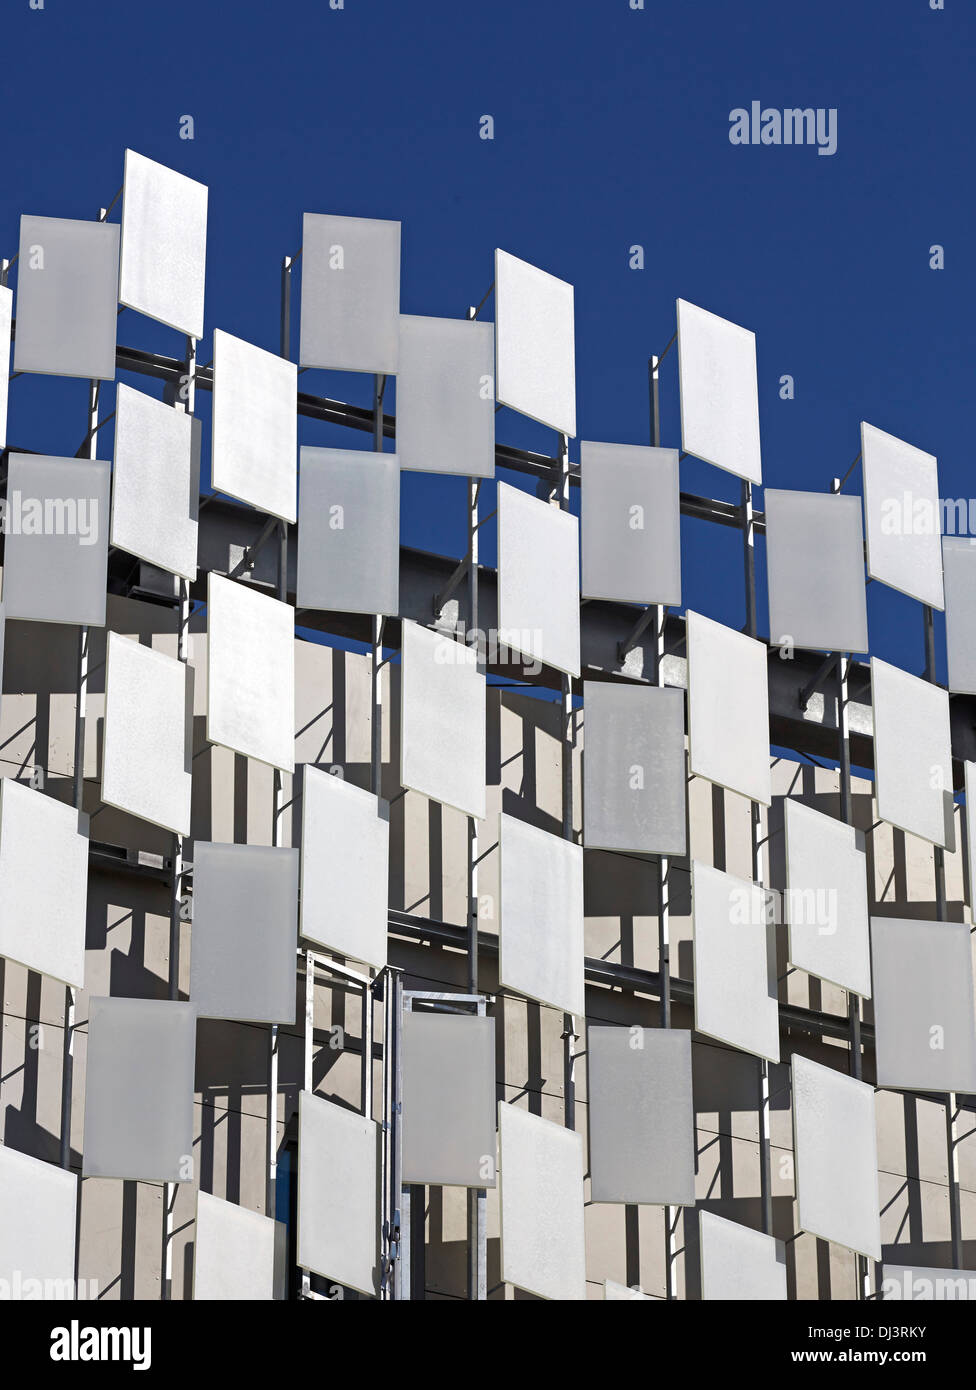 FRAC, Marsiglia, Francia. Architetto: Kengo Kuma, 2013. Dettaglio della facciata. Foto Stock